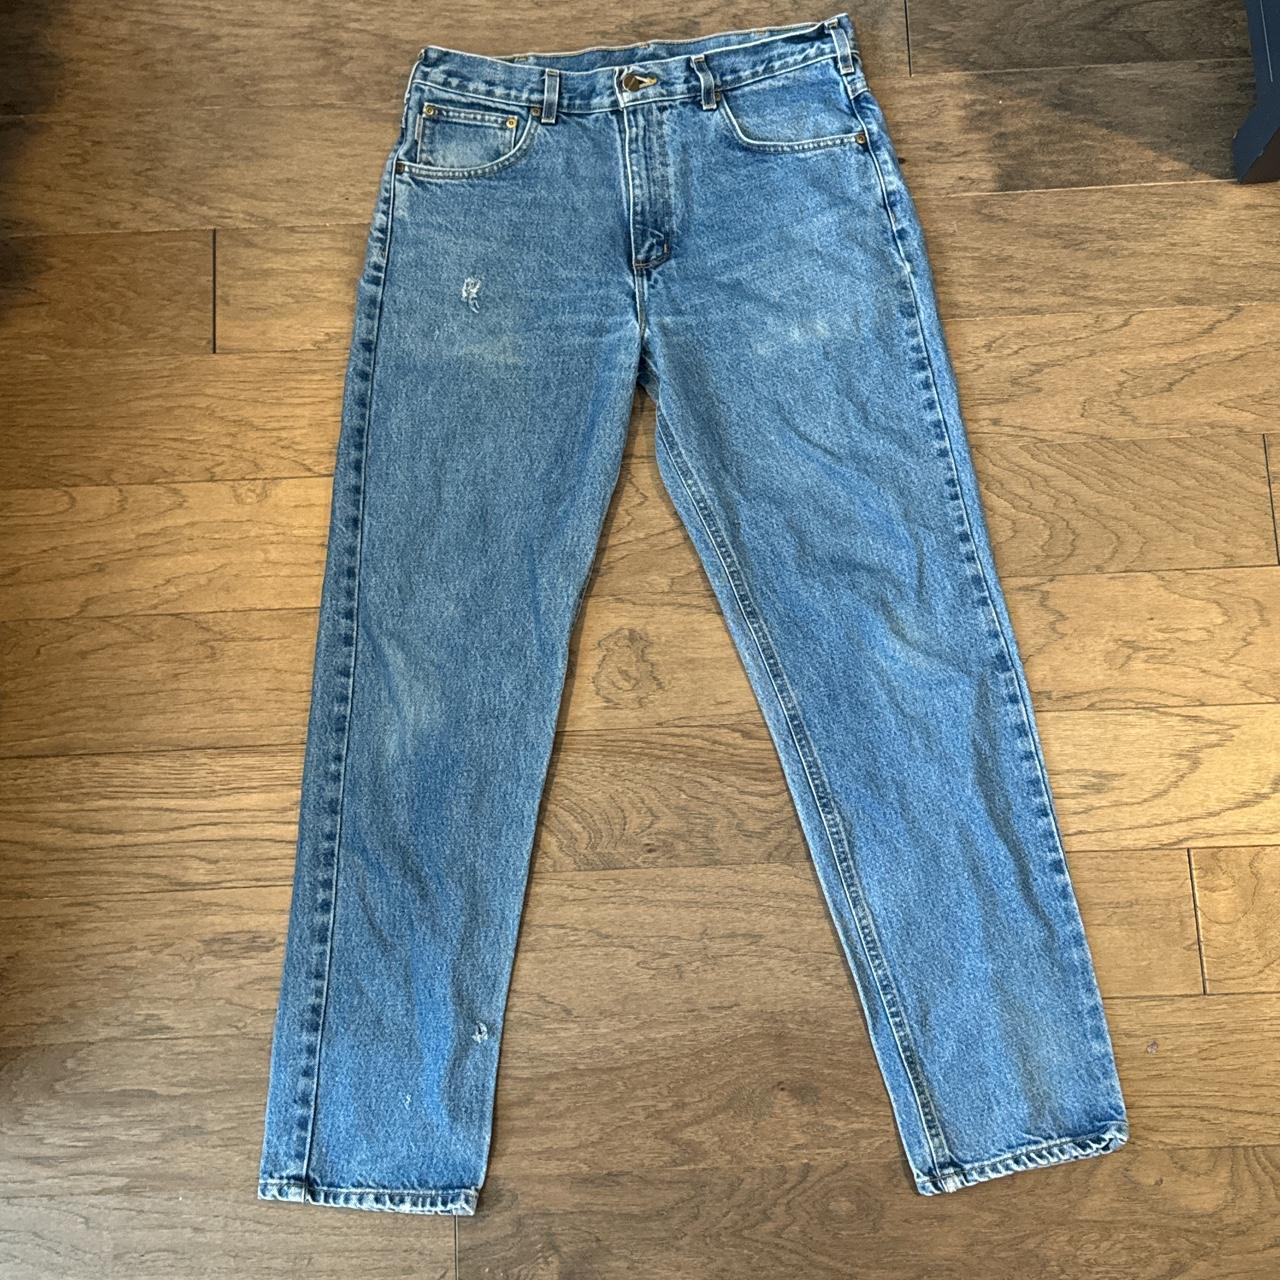 Early 2000s carhartt jeans 34 X 32 - Depop